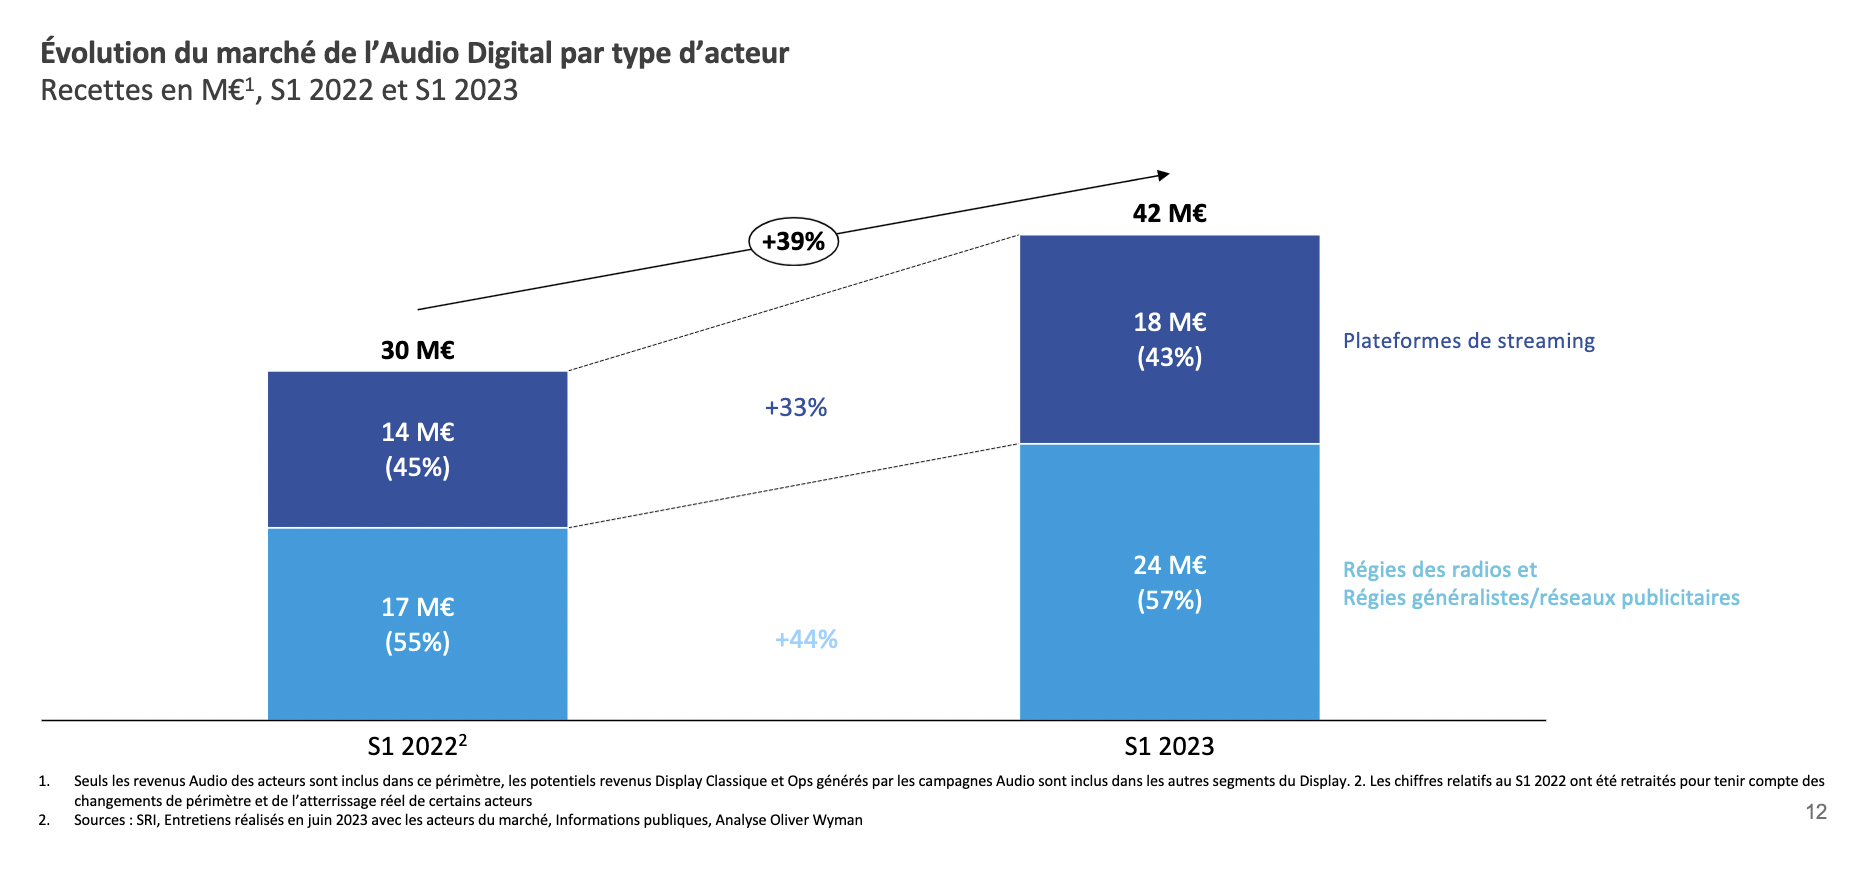 L’Audio Digital affiche encore ce semestre une forte croissance (+39%)